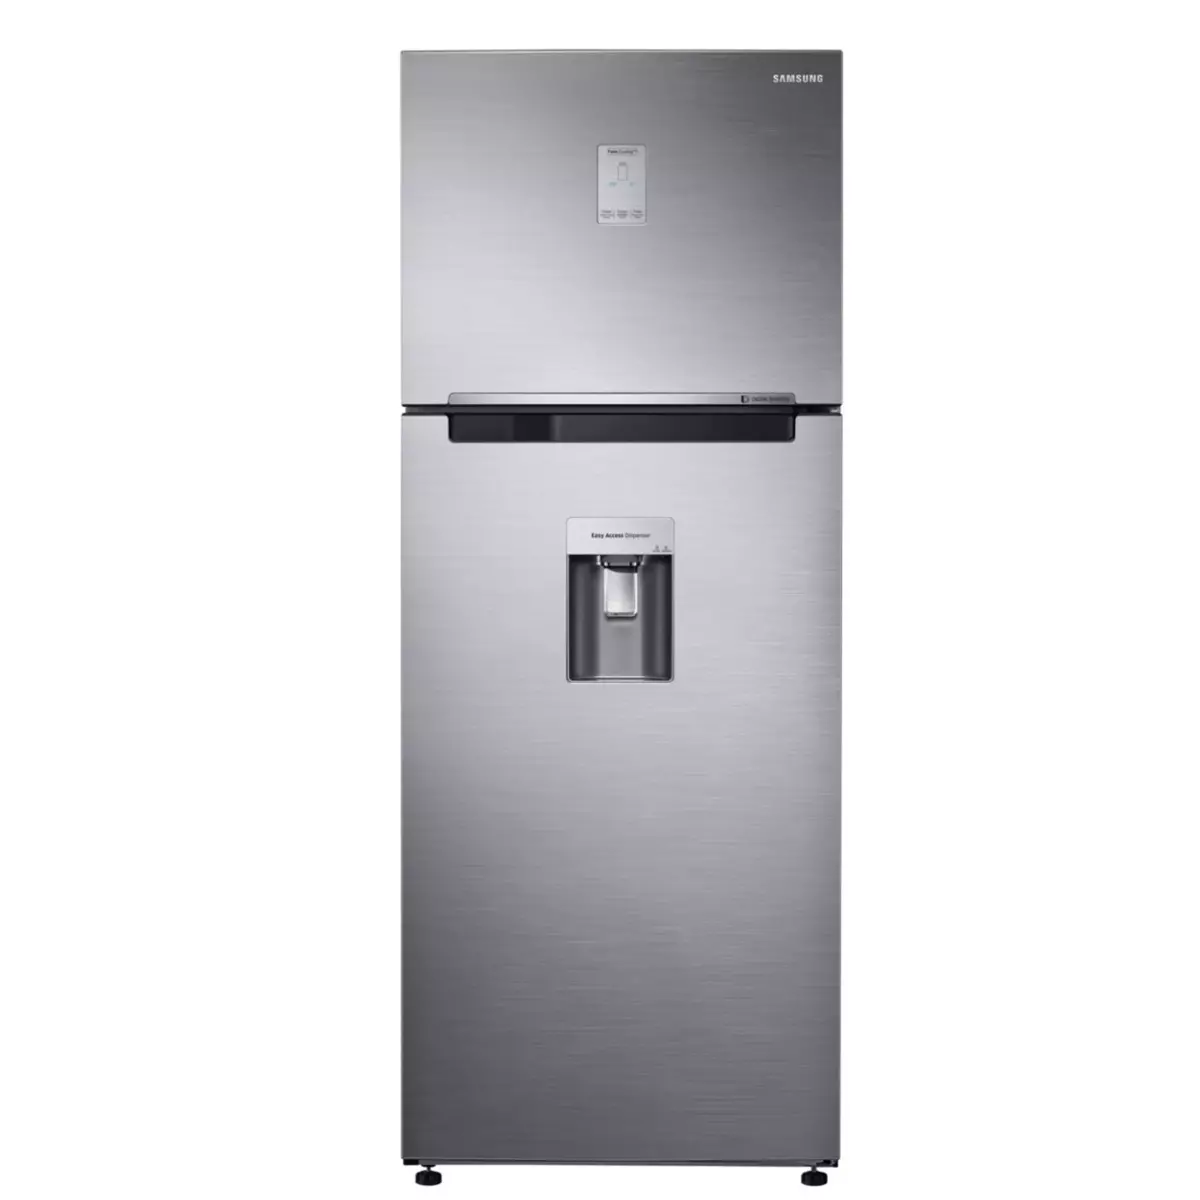 SAMSUNG Réfrigérateur 2 portes RT46K6600S9, 455 L, Froid ventilé No frost